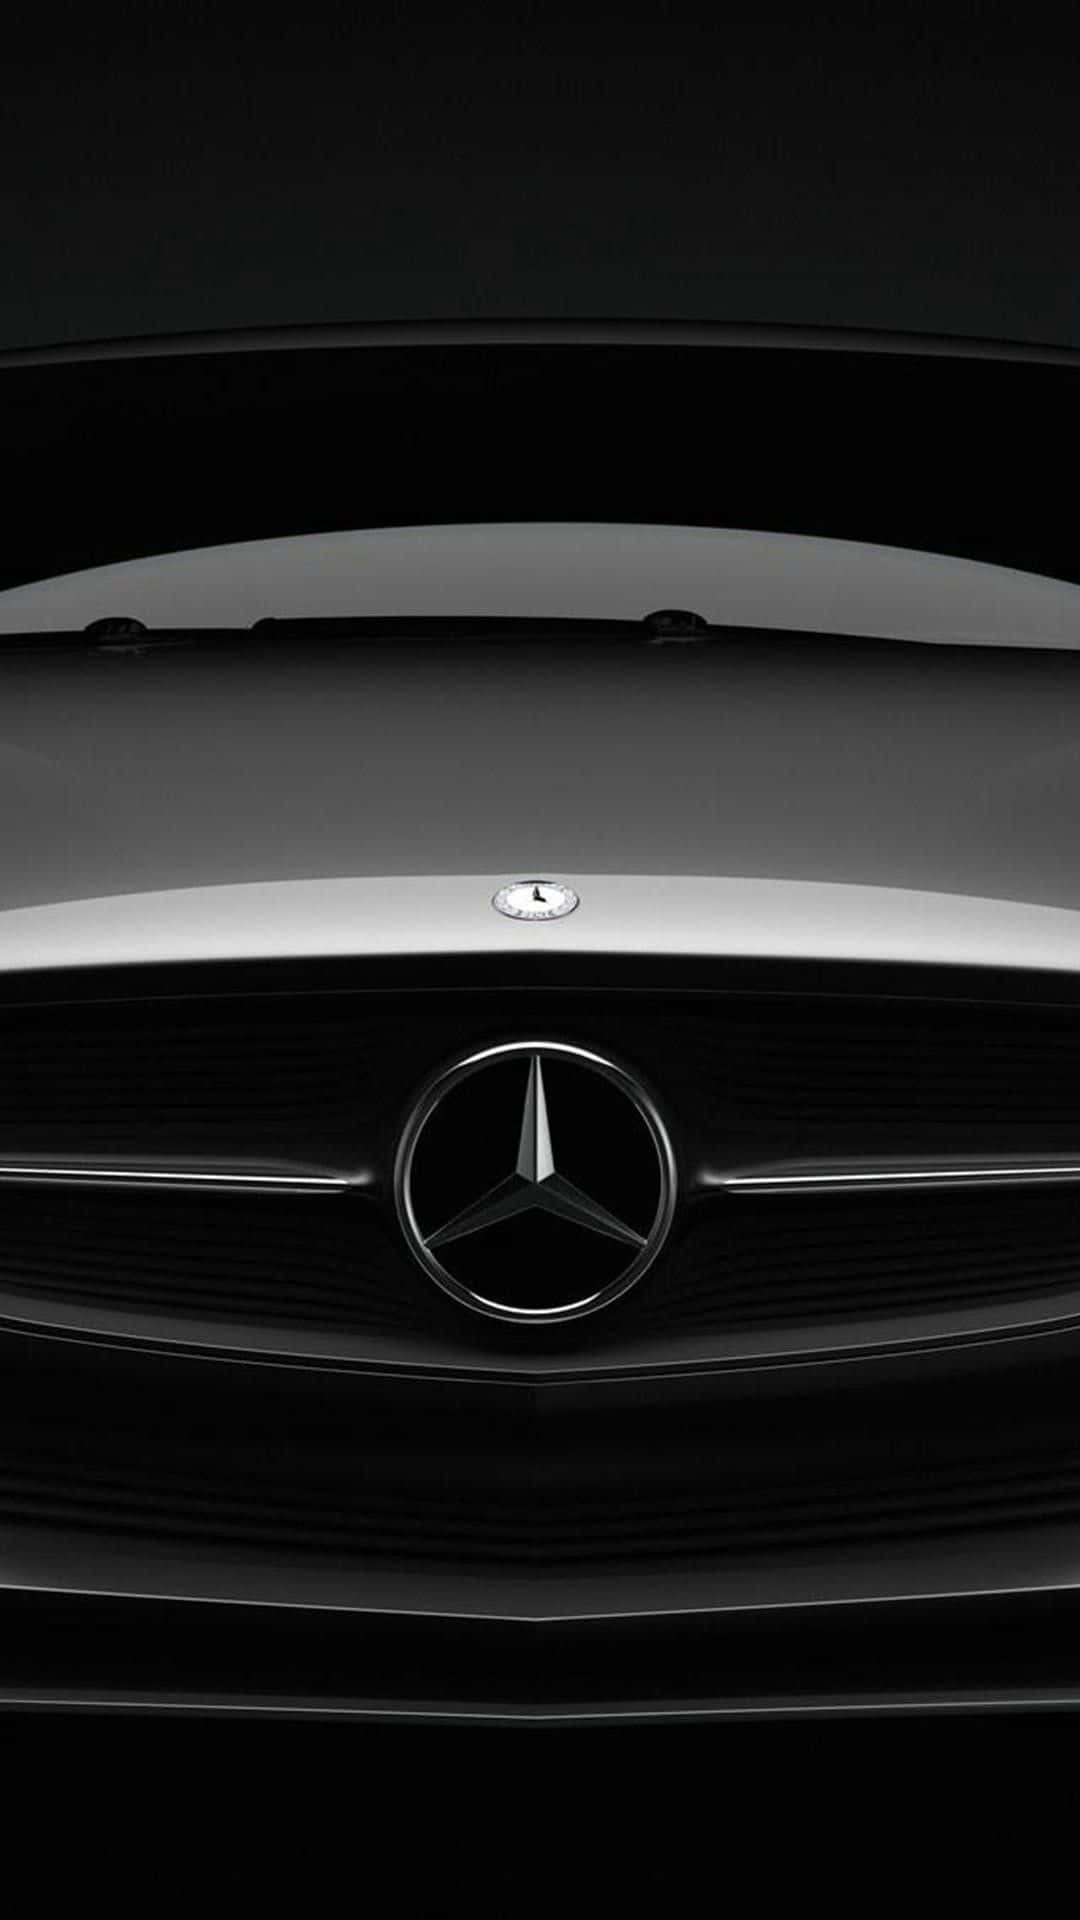 Schaudir Das Neueste Mercedes-benz Iphone- Wallpaper An. Wallpaper